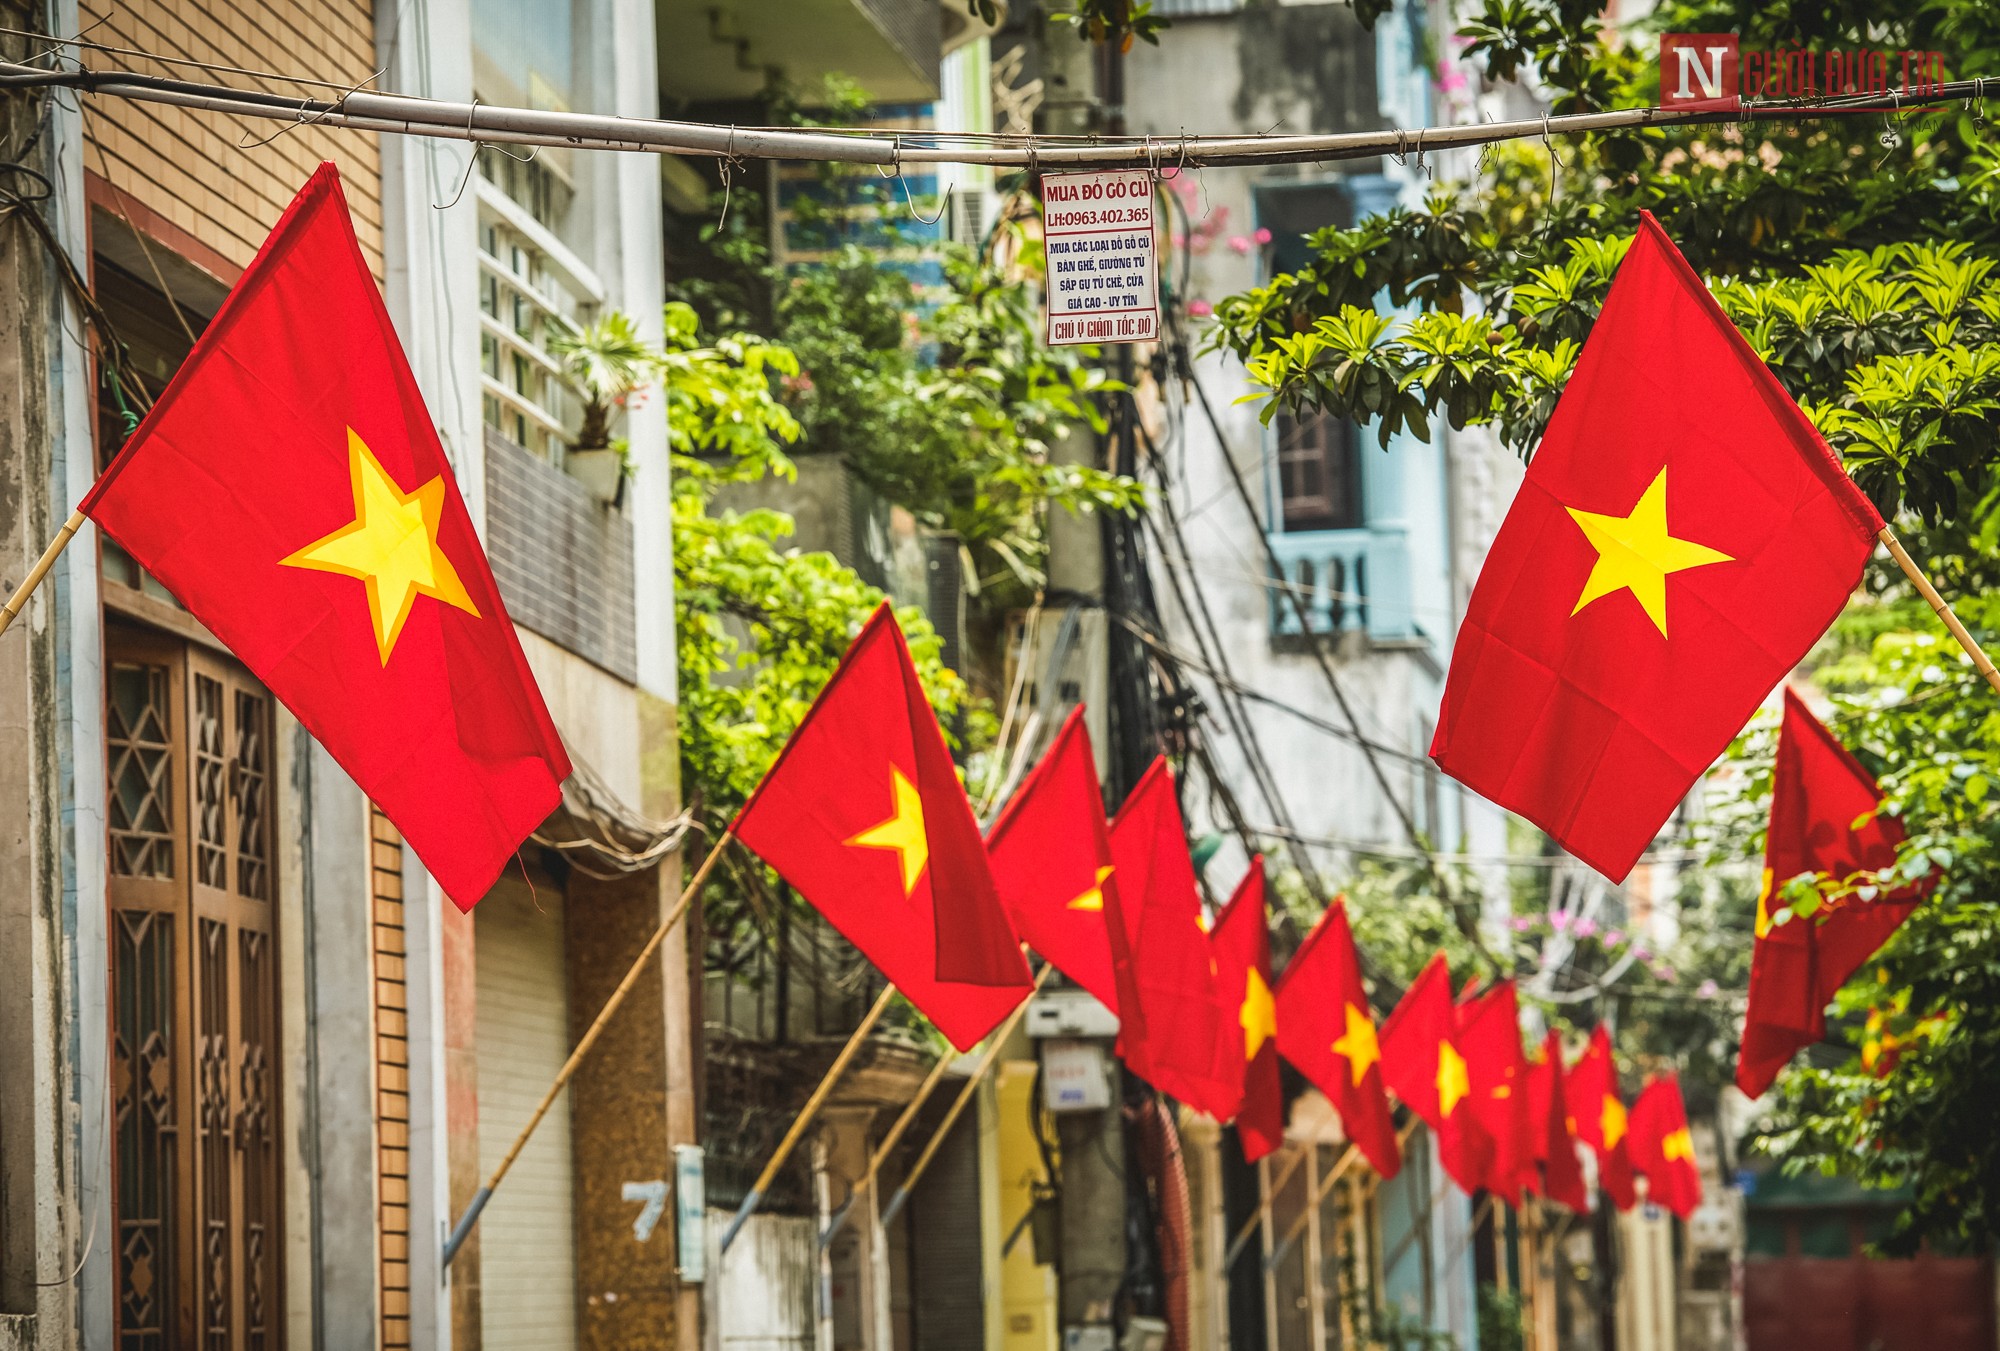 Cờ Tổ Quốc: Lá cờ Tổ quốc là biểu tượng vĩnh cửu của sự đoàn kết, sức mạnh và niềm tự hào của người Việt. Hãy cùng chiêm ngưỡng hình ảnh về lá cờ Tổ quốc, tìm hiểu về lịch sử và ý nghĩa của nó, cùng chứng tỏ tình yêu quê hương, tình yêu đất nước mỗi ngày.